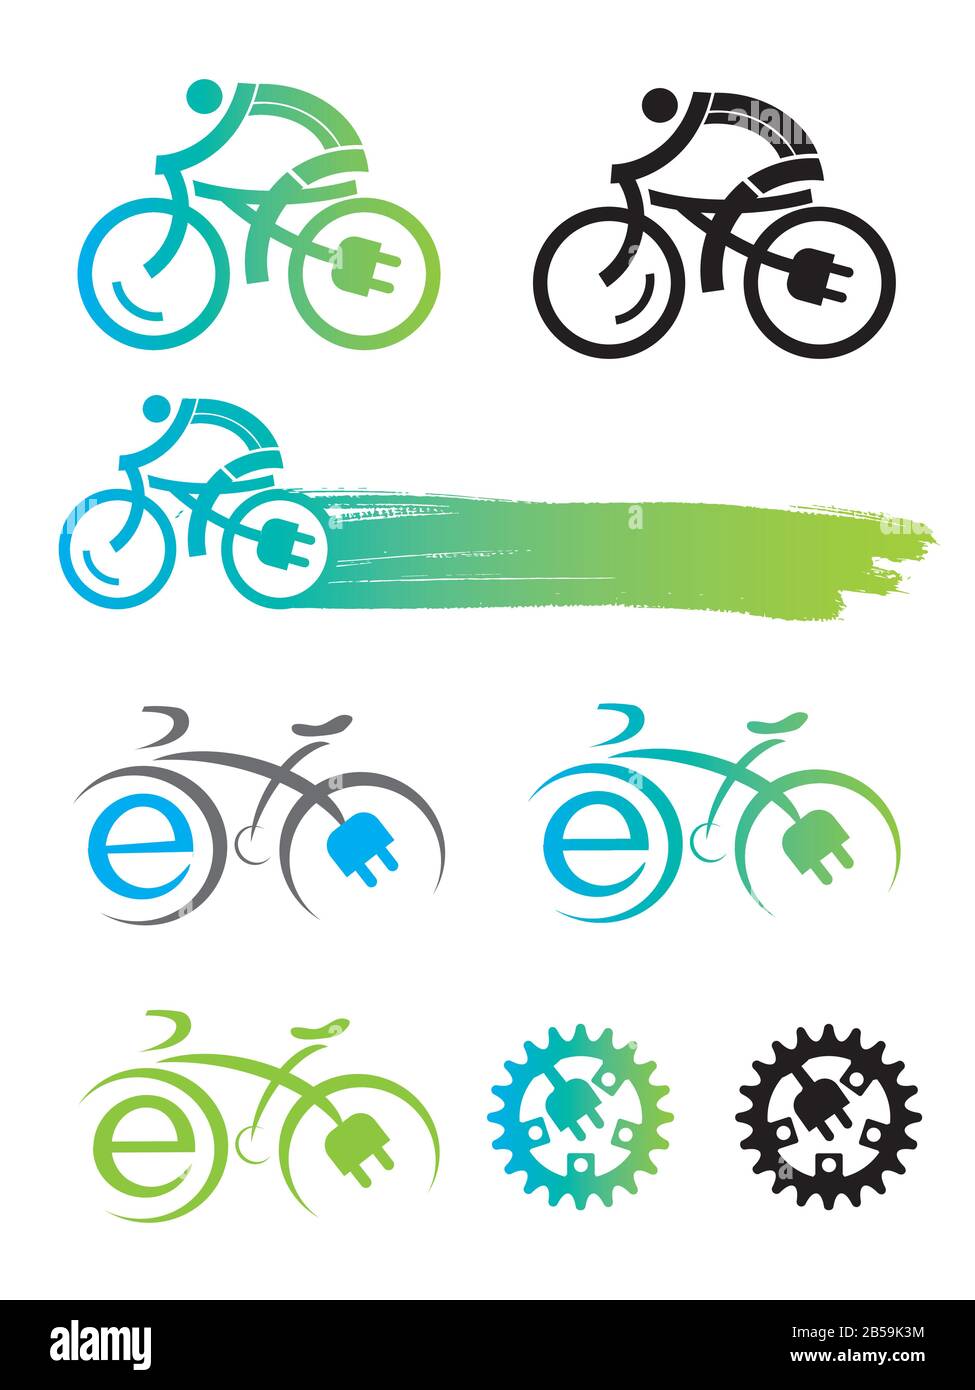 Simboli della bici immagini e fotografie stock ad alta risoluzione - Alamy